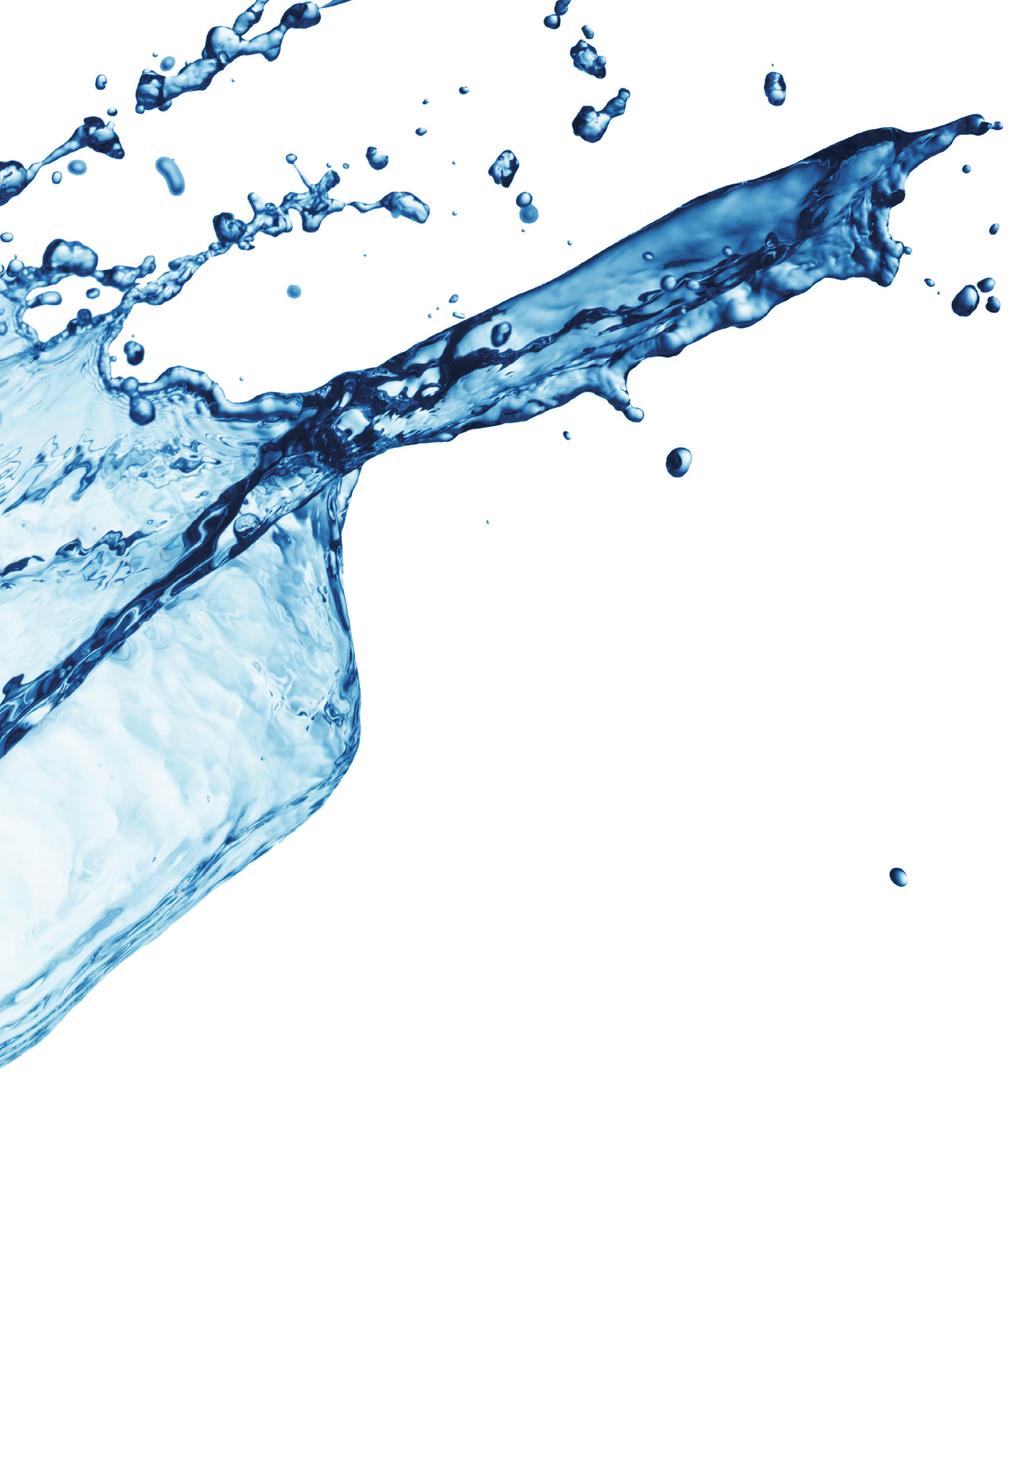 Νερό, το απαραίτητο γευστικό στοιχείο των ροφημάτων. Η κακή διαχείριση του νερού μπορεί να οδηγήσει σε γευστικές αλλοιώσεις και να προκαλέσει προβλήματα στη λειτουργία του εξοπλισμού.